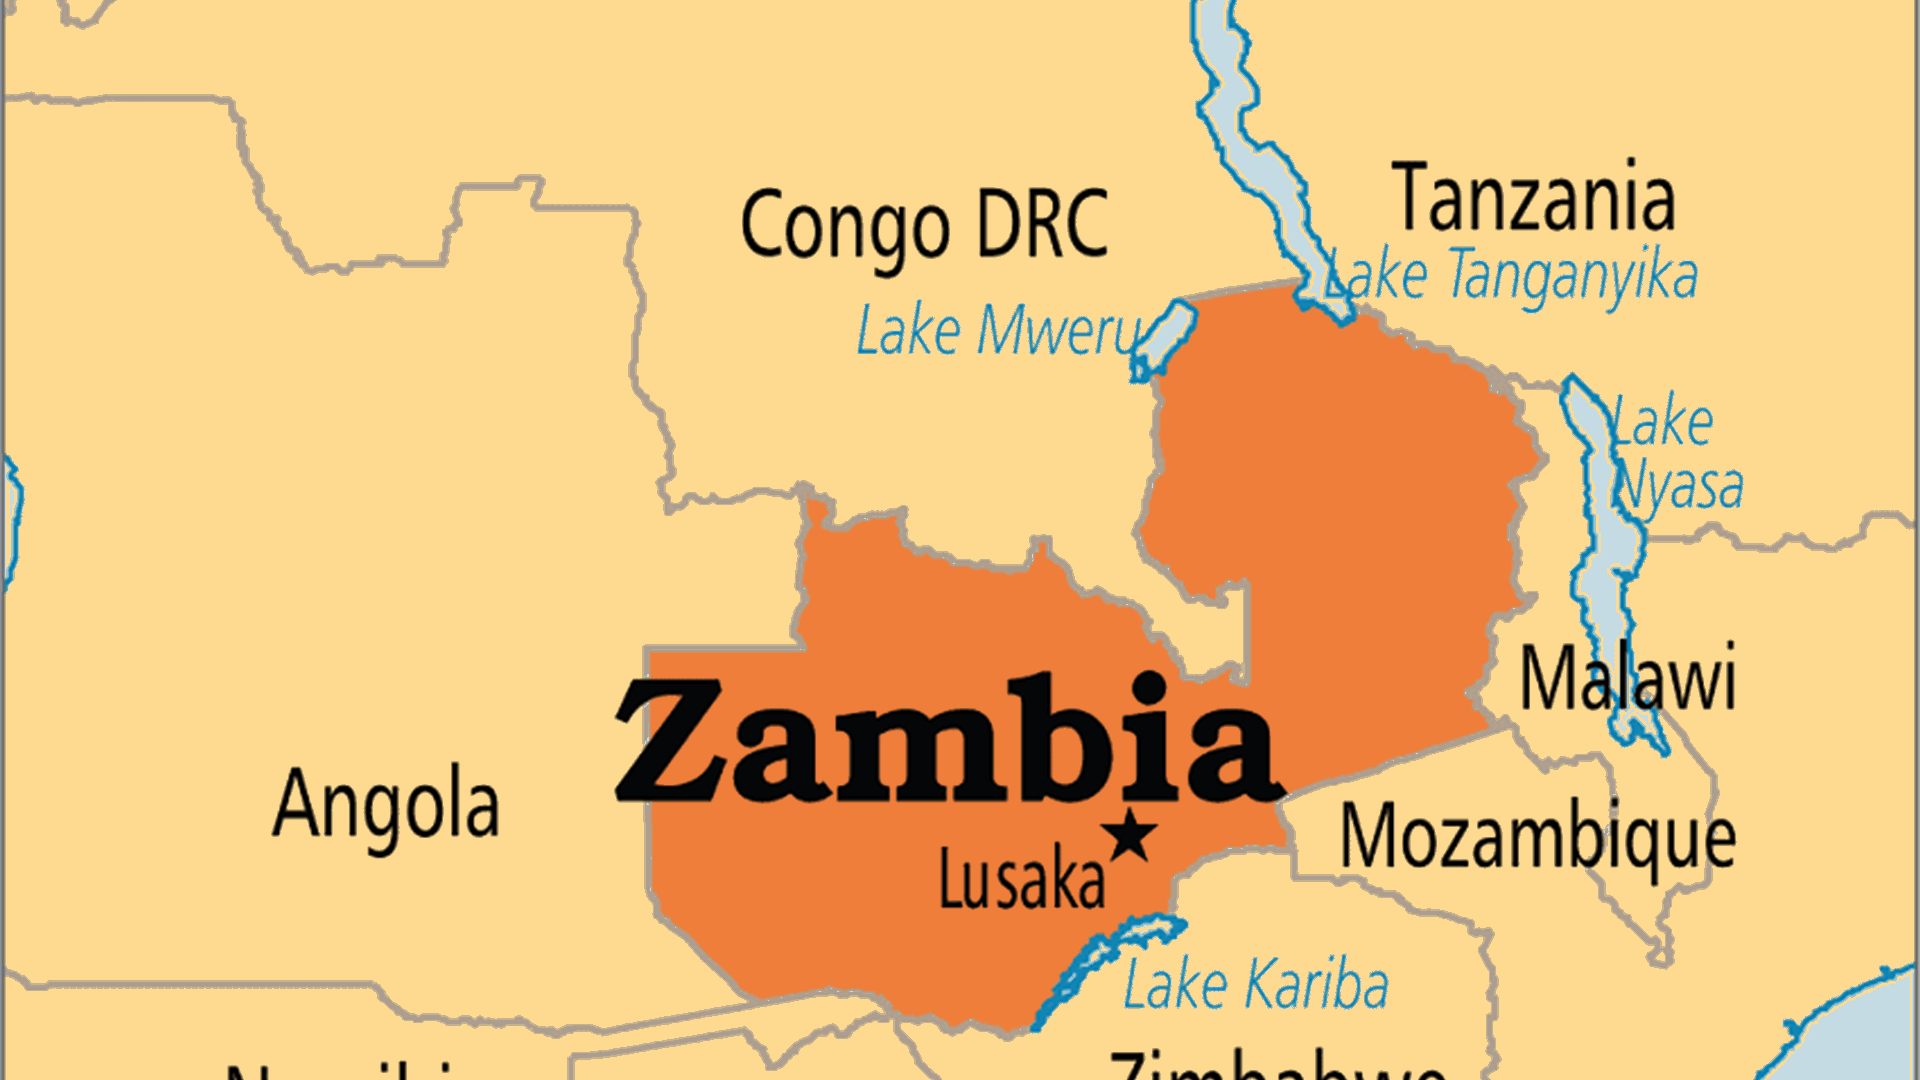 مصرع 24 شخصا بحادث حافلة في زامبيا